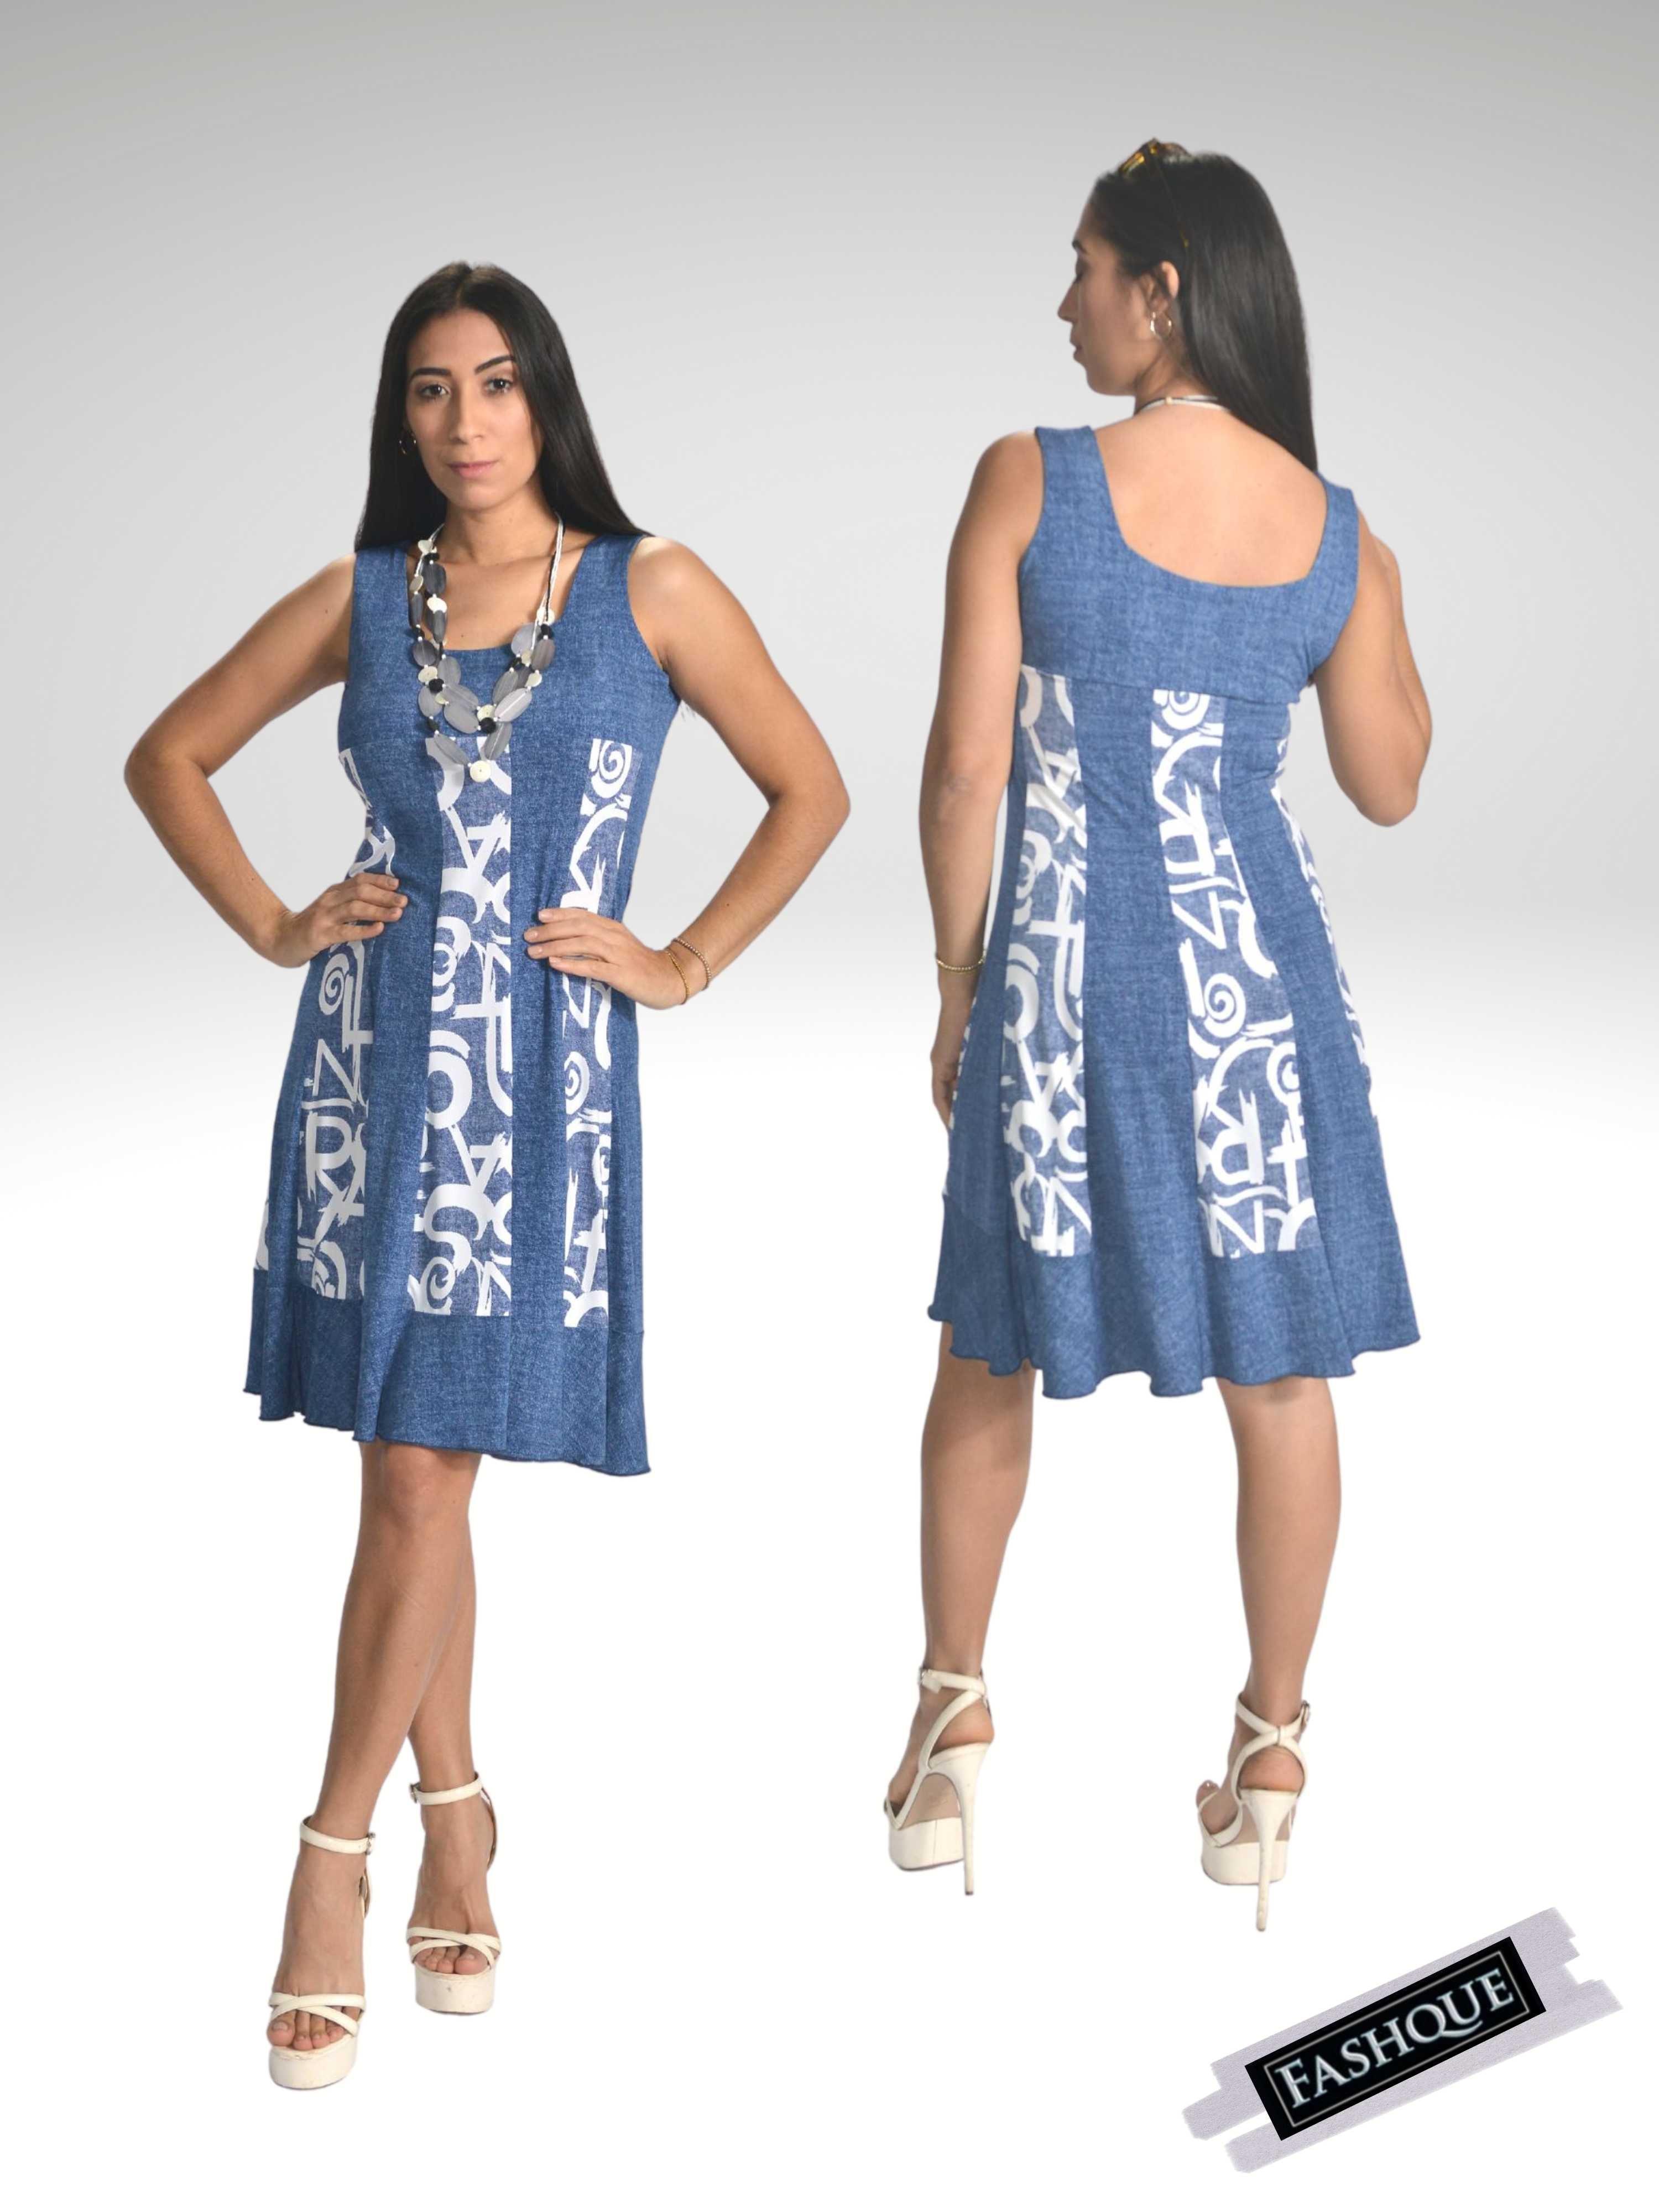 FASHQUE - Sleeveless Panel Dress - D101